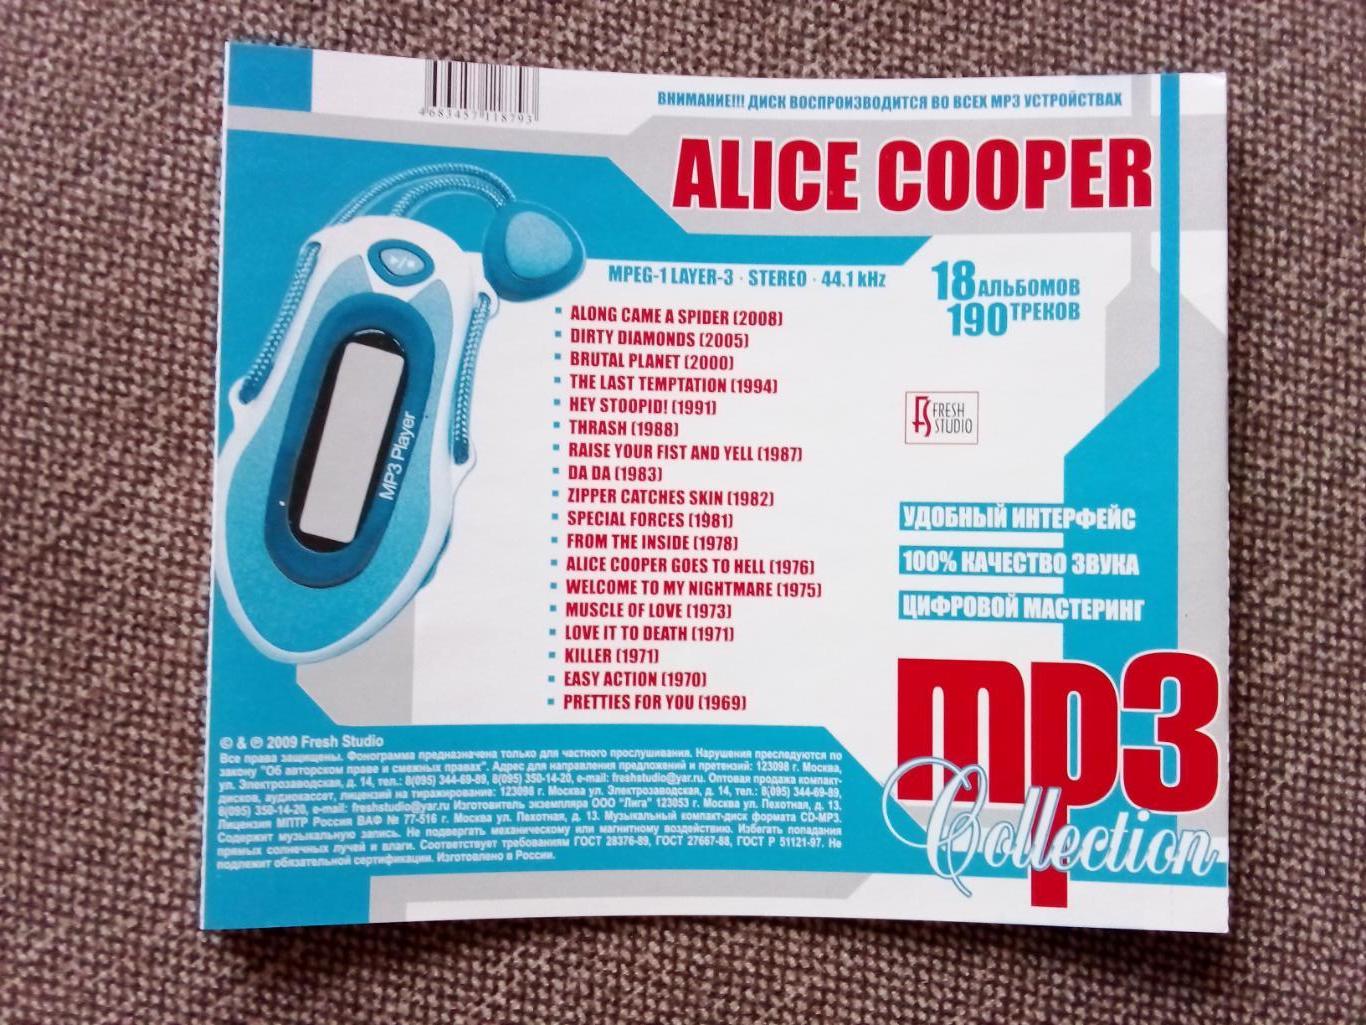 CD MP - 3 диск :Alice Cooper 1969 - 2008 гг. 18 альбомов (Рок - музыка) лицензия 6